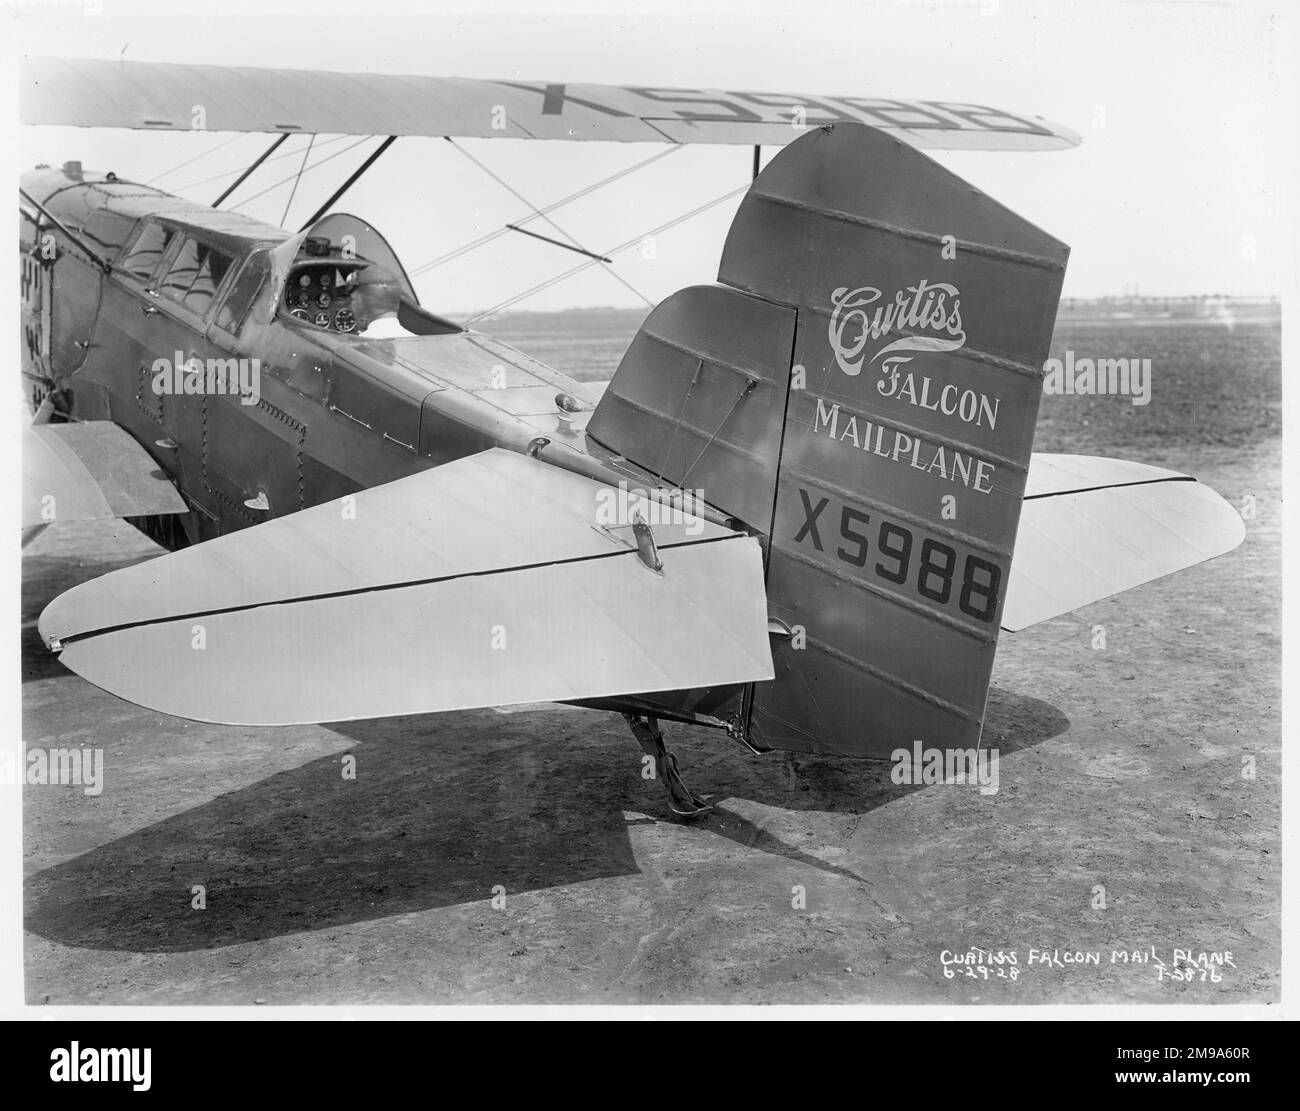 Curtiss Falcon (Conqueror) Mailplane NX5988 (msn 1). Un avion de courrier dérivé du Falcon avec une cabine fermée devant le pilote. Cet avion était prêté à Transcontinental Air transport (TAT) lorsqu'il s'est écrasé le 21 août 1928 Banque D'Images